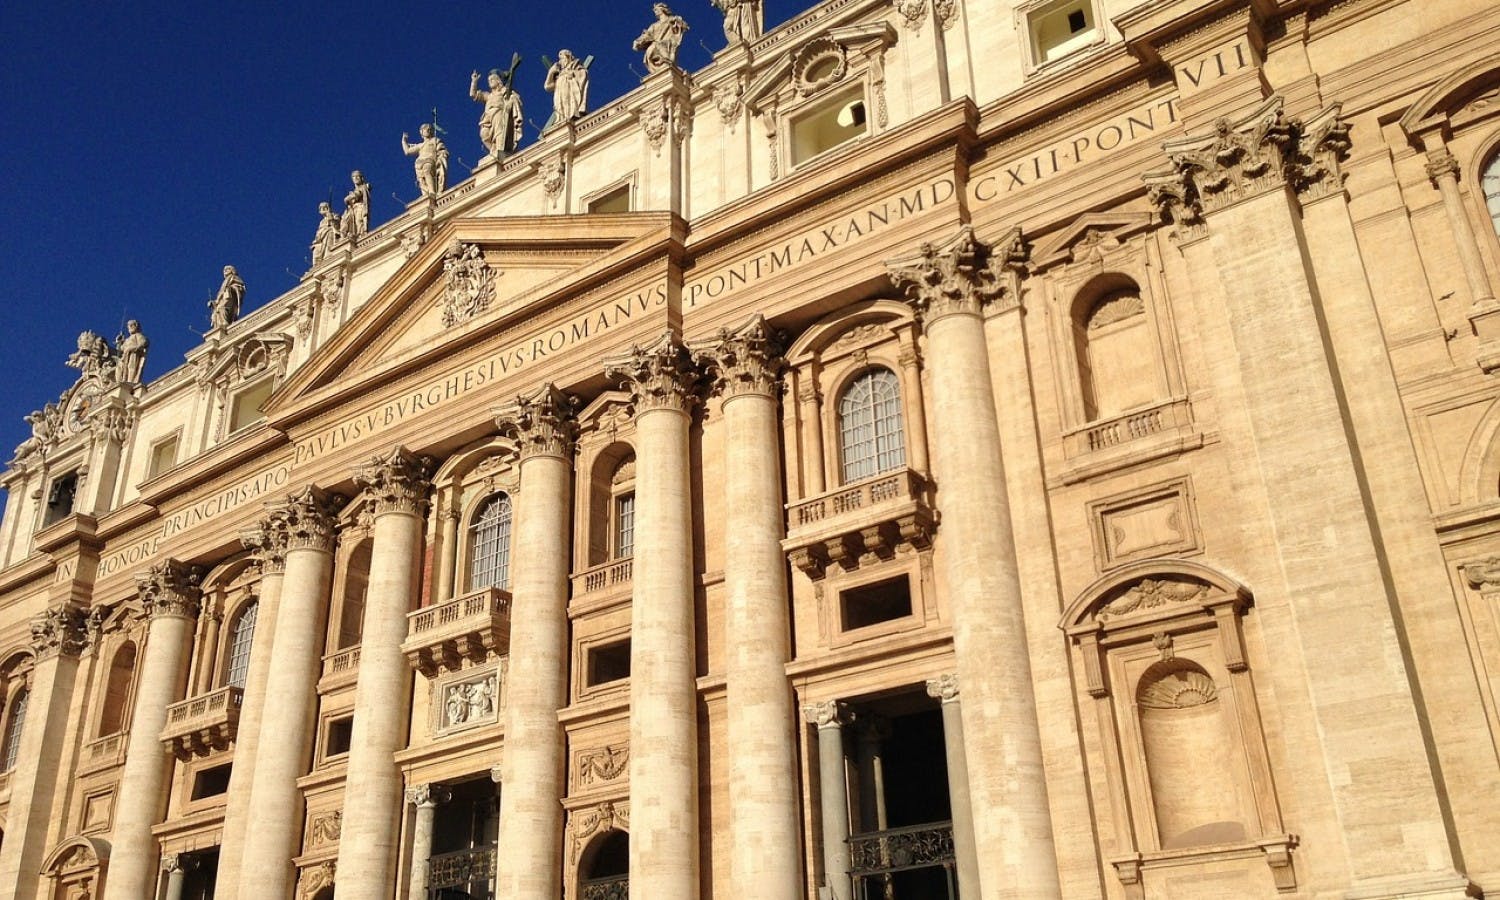 Bus hop-on hop-off 24 o 48 ore + audioguida ufficiale della Basilica di San Pietro